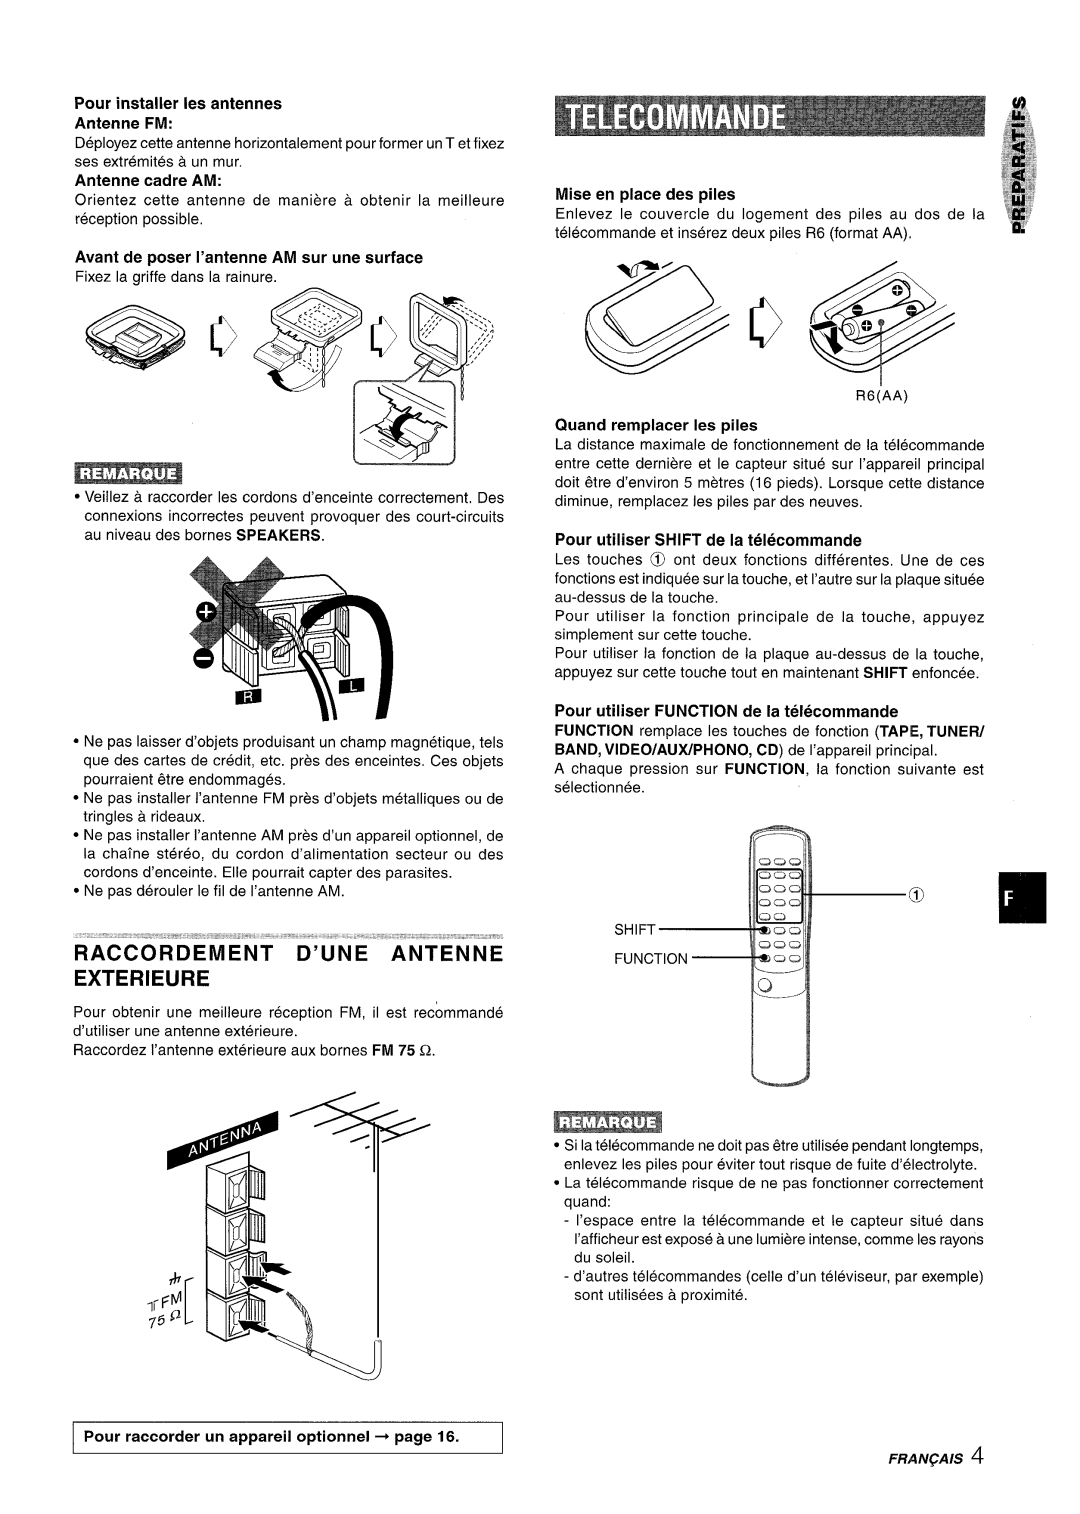 Aiwa Z-R555 manual R’Accorde”Ment ‘“D’Une ““”Antenne Exterieure 